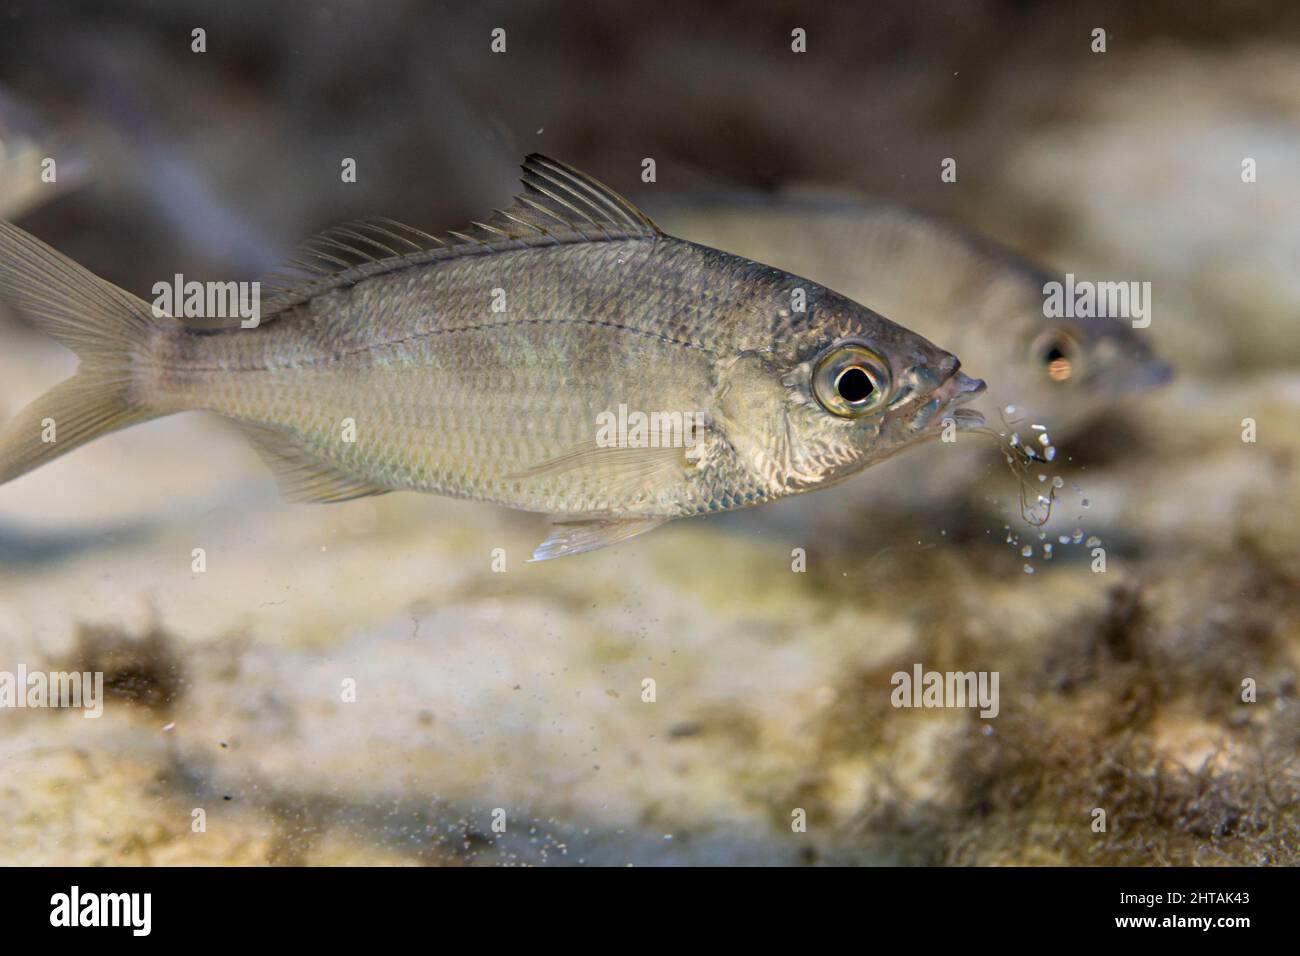 Gros plan d'un poisson-appât sauvage appelé 'Silver Jenny' Mojarra (Euchinostomus harengulus) qui crache le sable après l'avoir sondé pour la nourriture. Banque D'Images